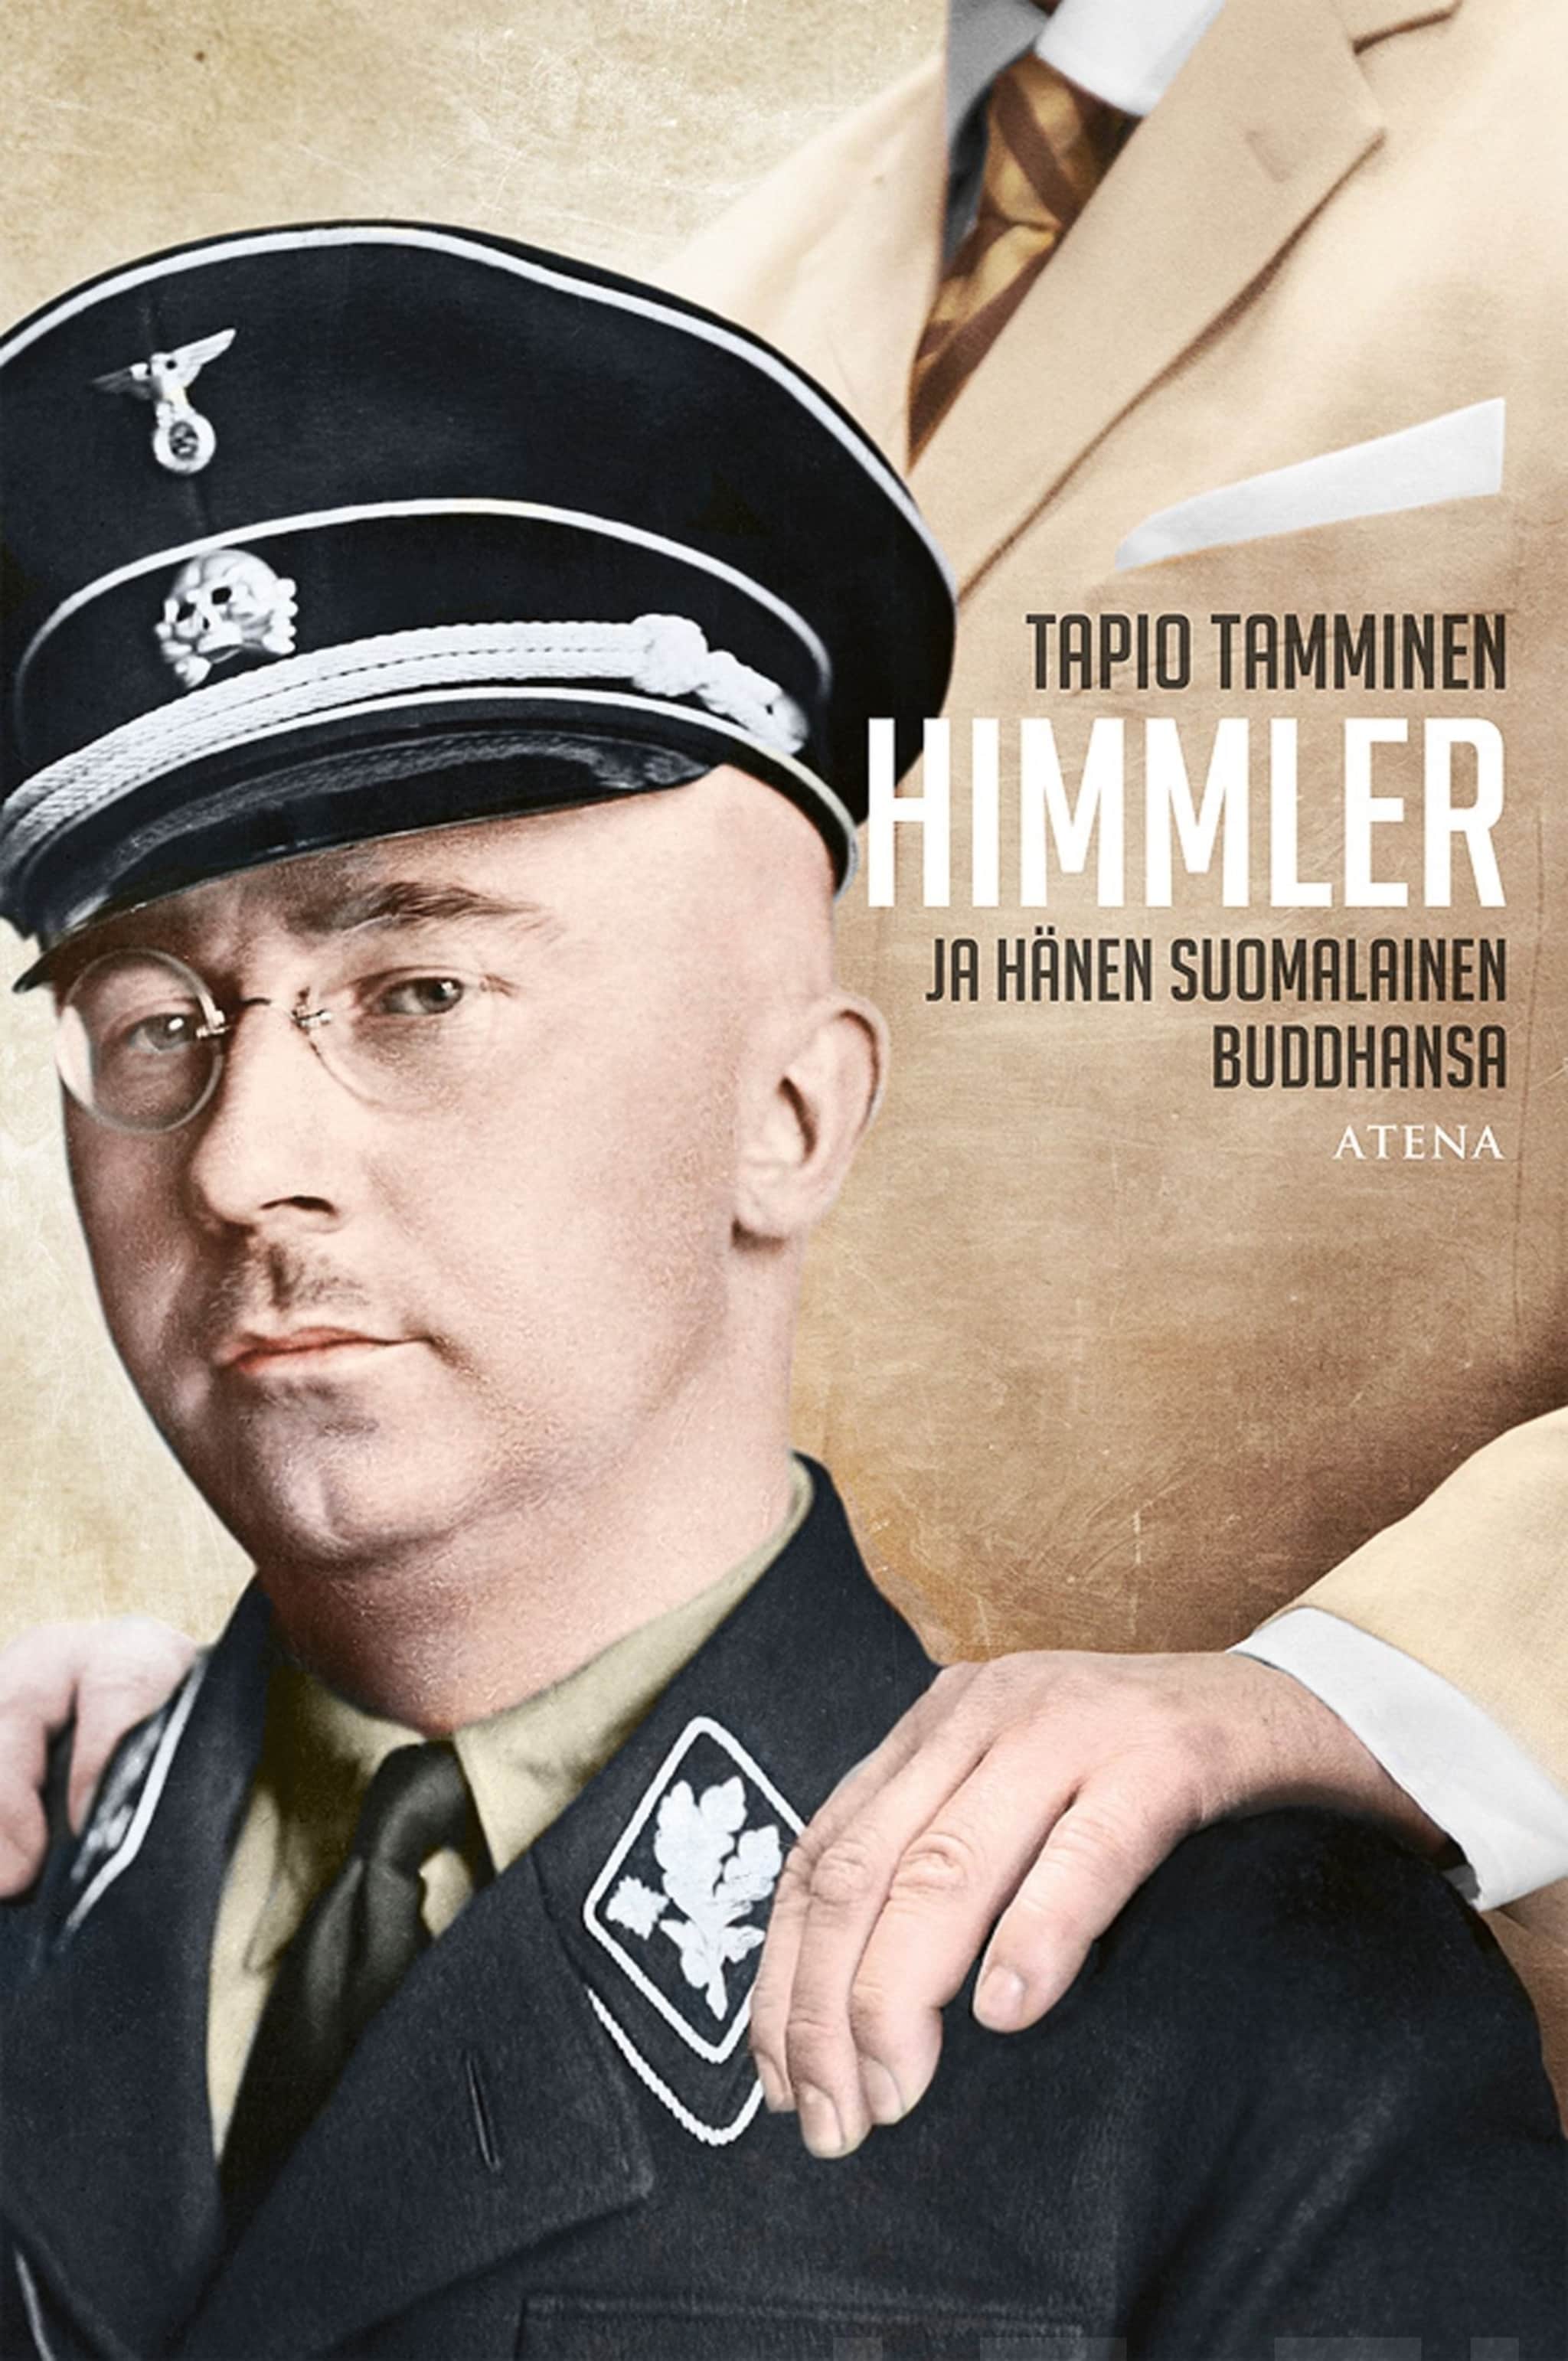 Himmler ja hänen suomalainen buddhansa ilmaiseksi